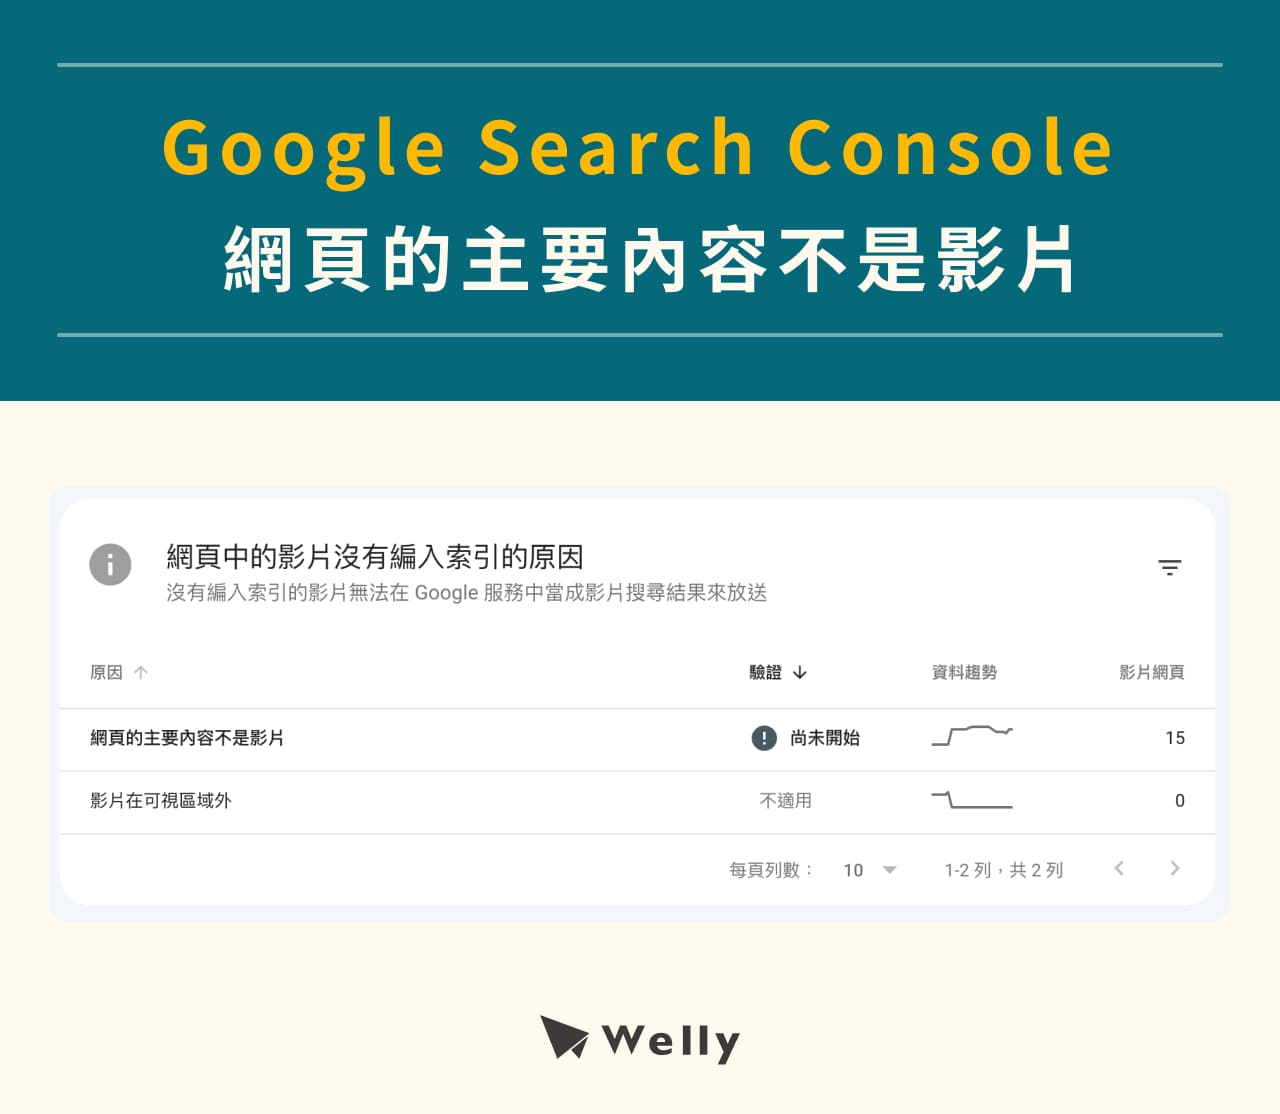 Google Search Console：網頁的主要內容不是影片